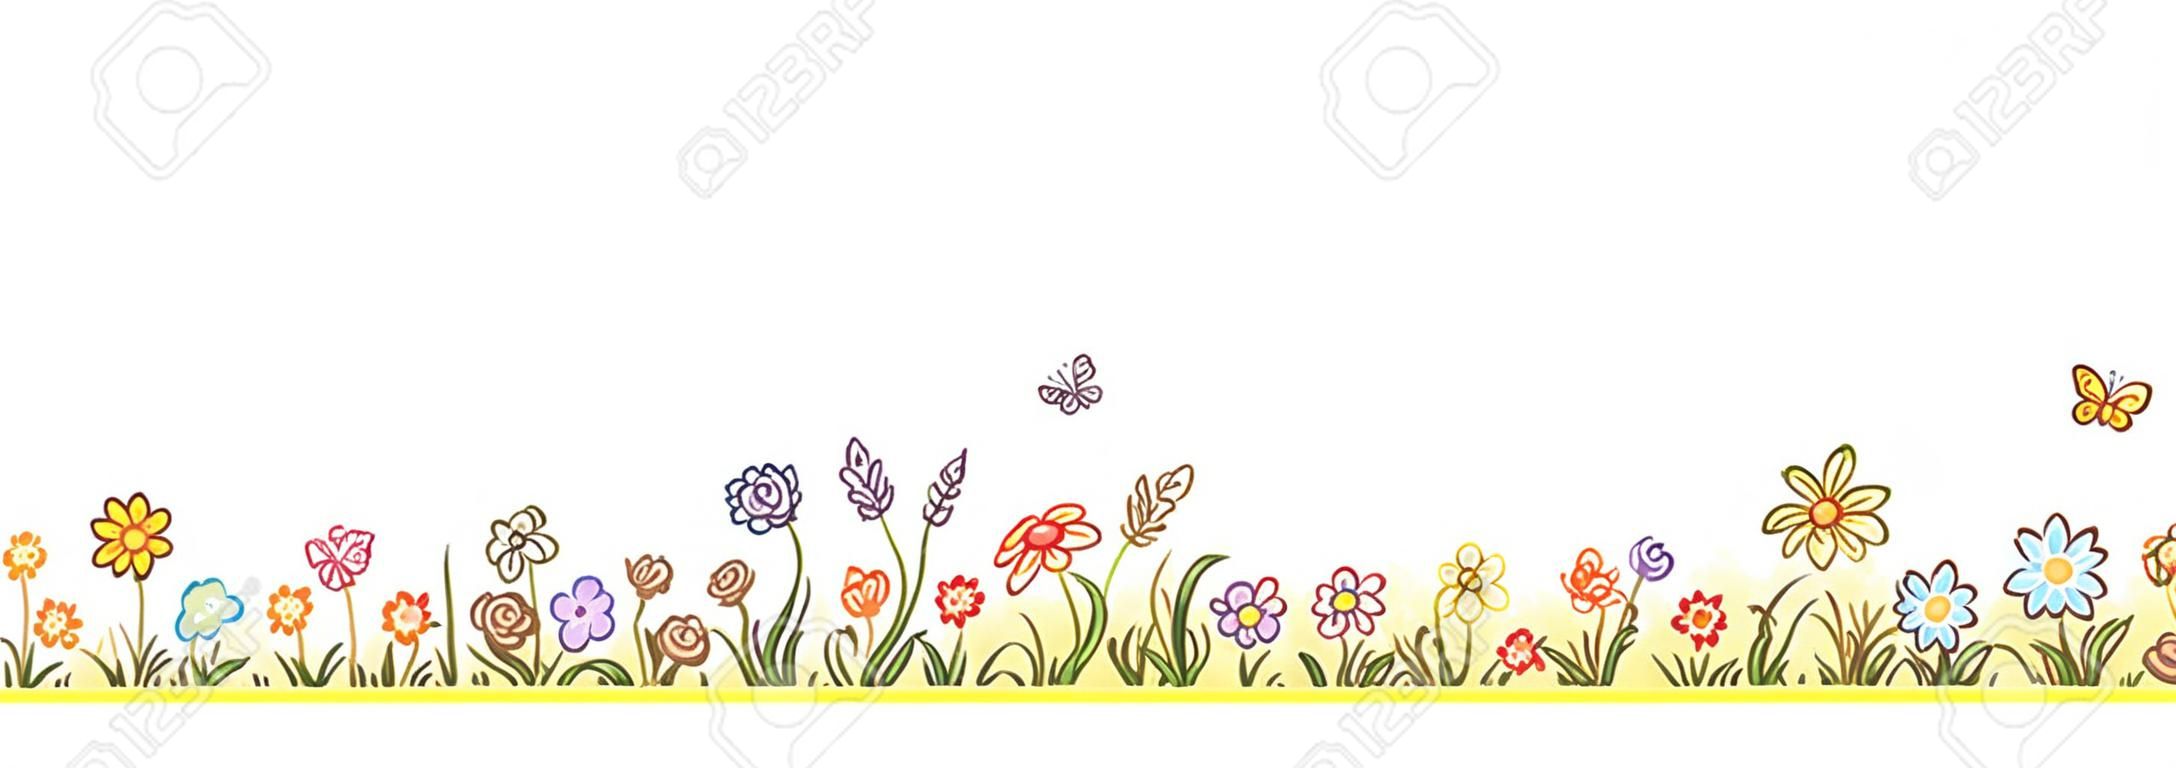 Colorful bordure de fleurs avec beaucoup de bande dessinée fleurs, l'herbe et les papillons, pas de gradients